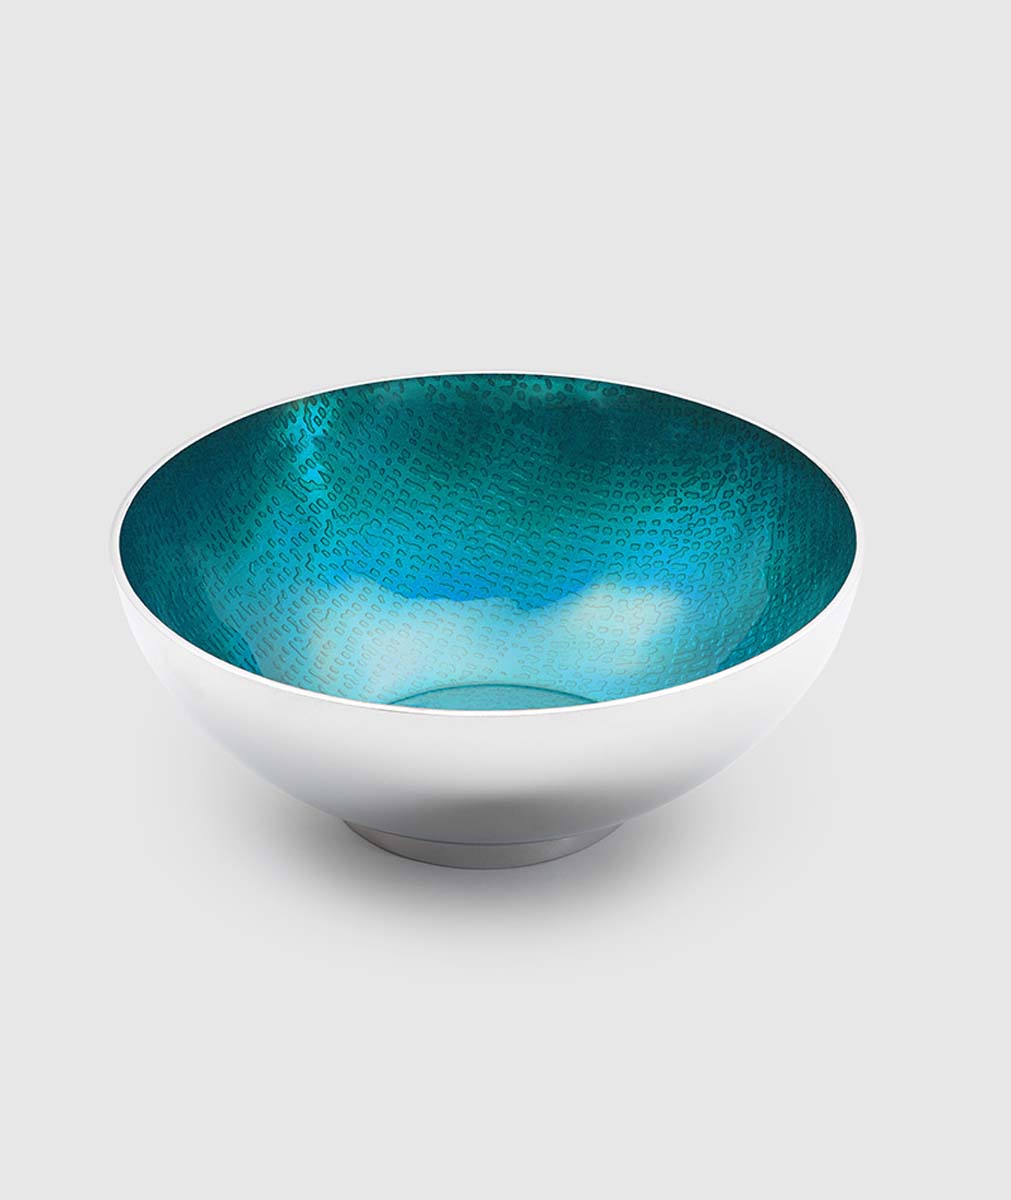 Symphony Turquoise Round Bowl 4.5 by Mary Jurek Design